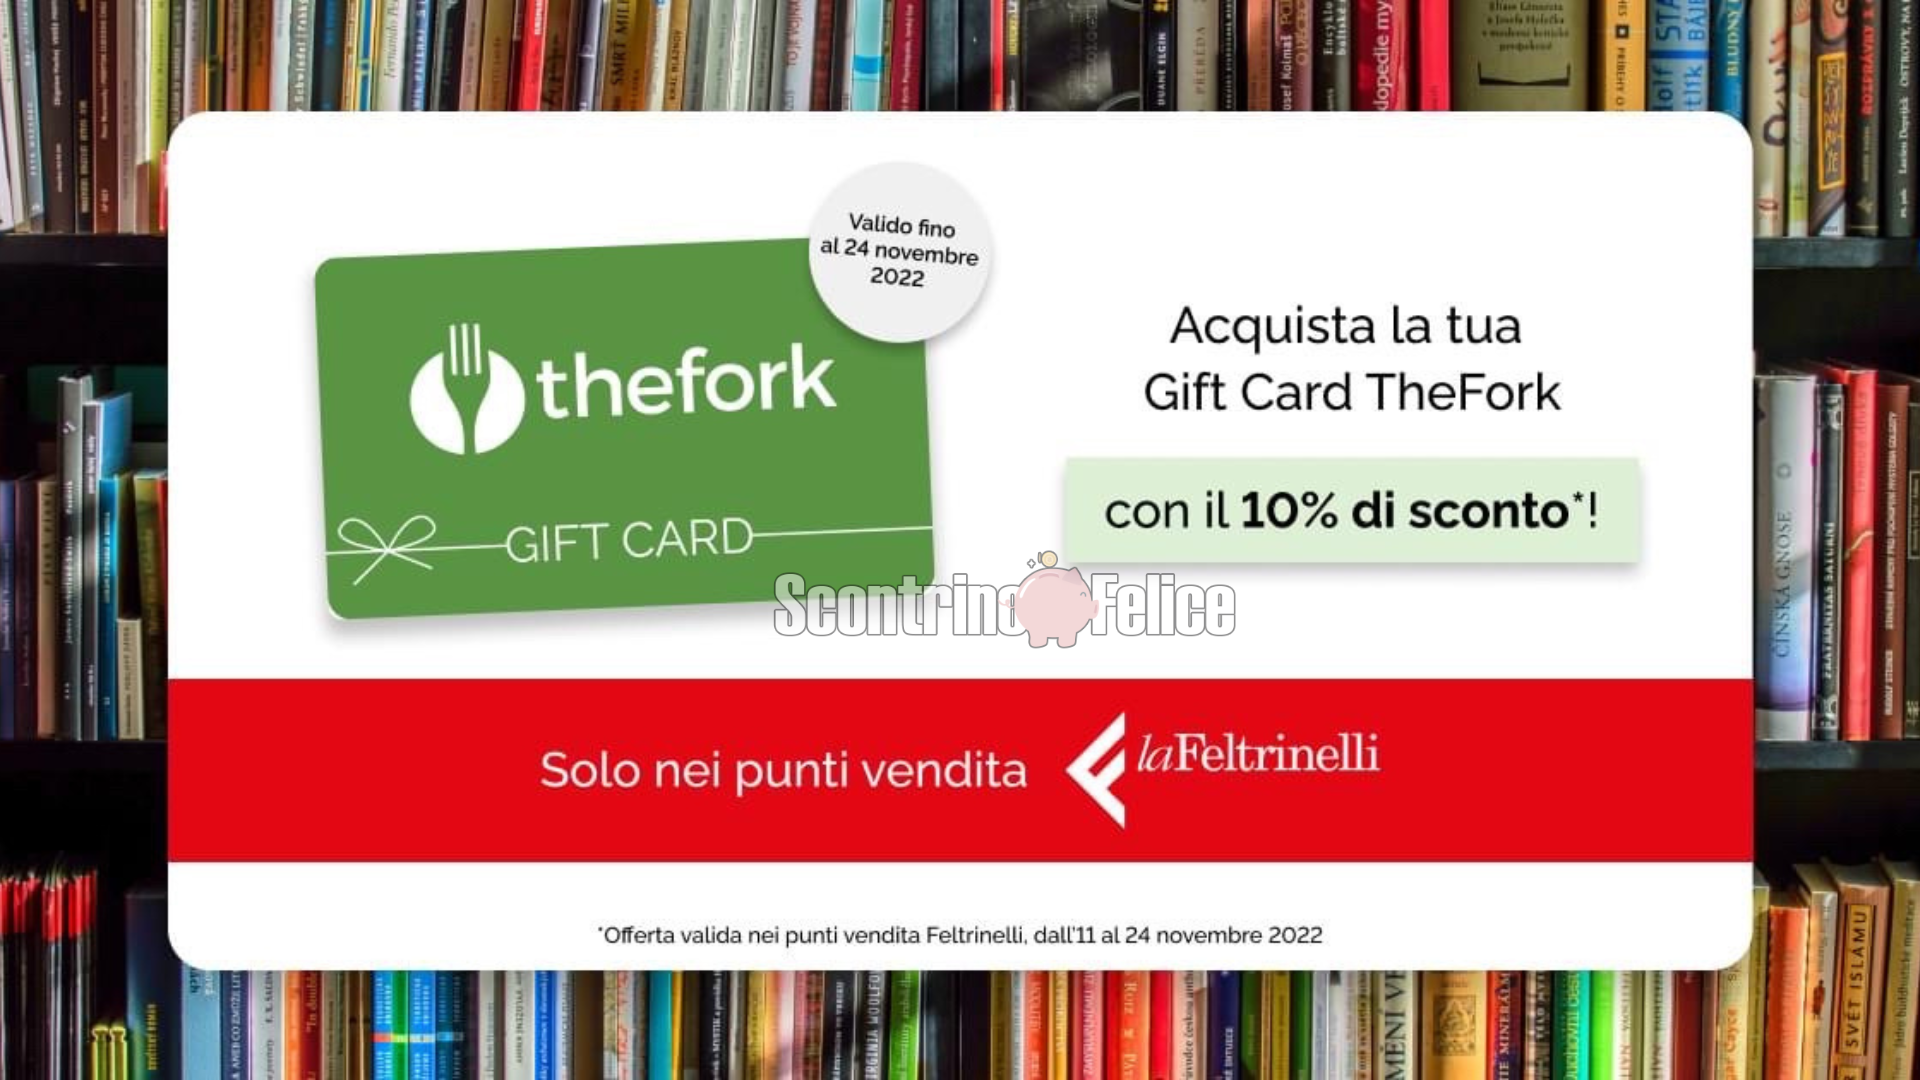 Gift Card TheFork scontate del 10% da LaFeltrinelli! 2